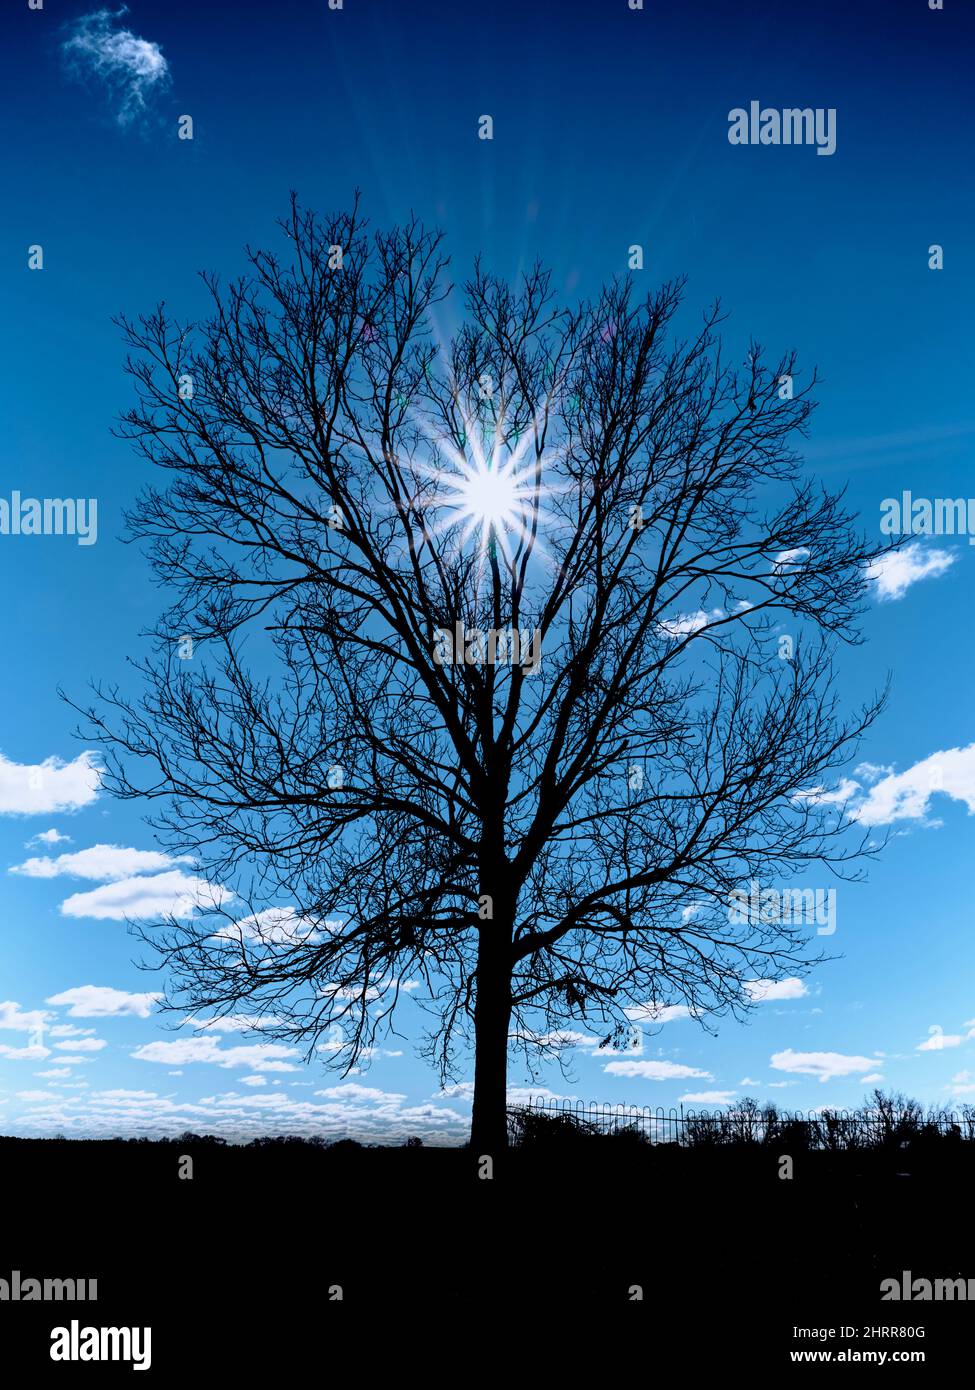 Kalte Winterbaumsilhouette mit dunkelblauem Himmel vor einer sternenklaren Sonne. Stockfoto